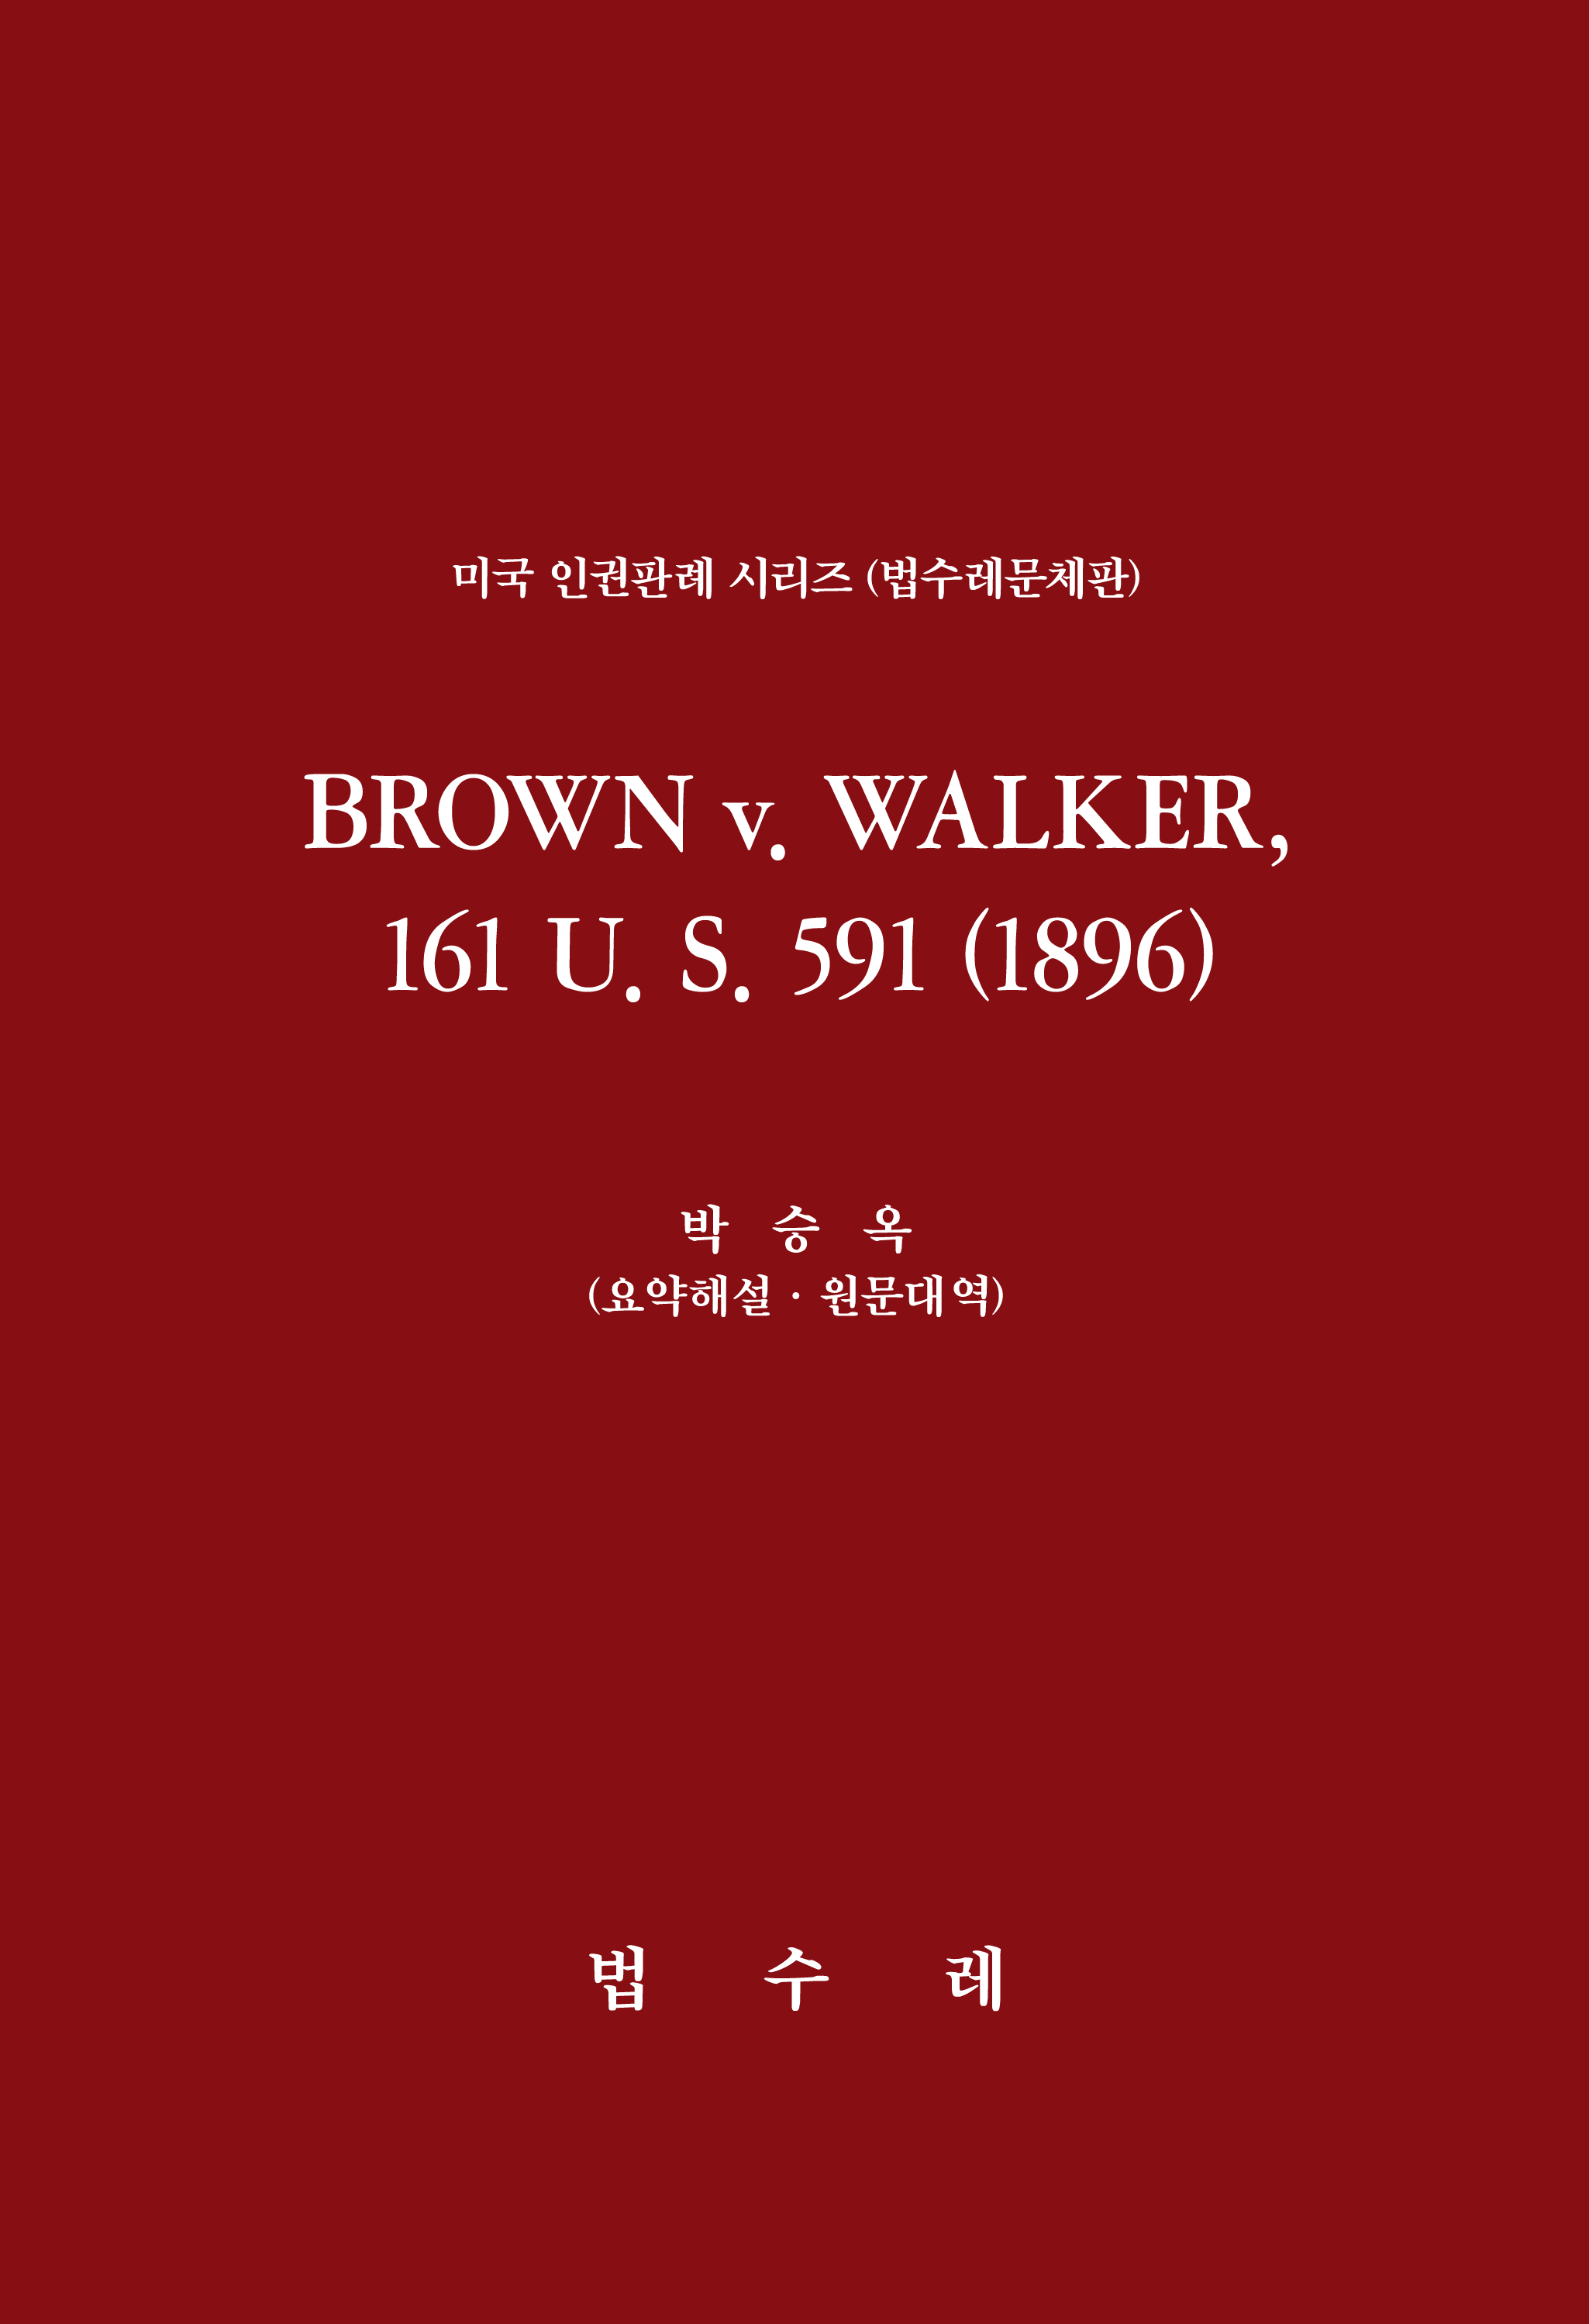 BROWN v. WALKER, 161 U. S. 591 (1896)